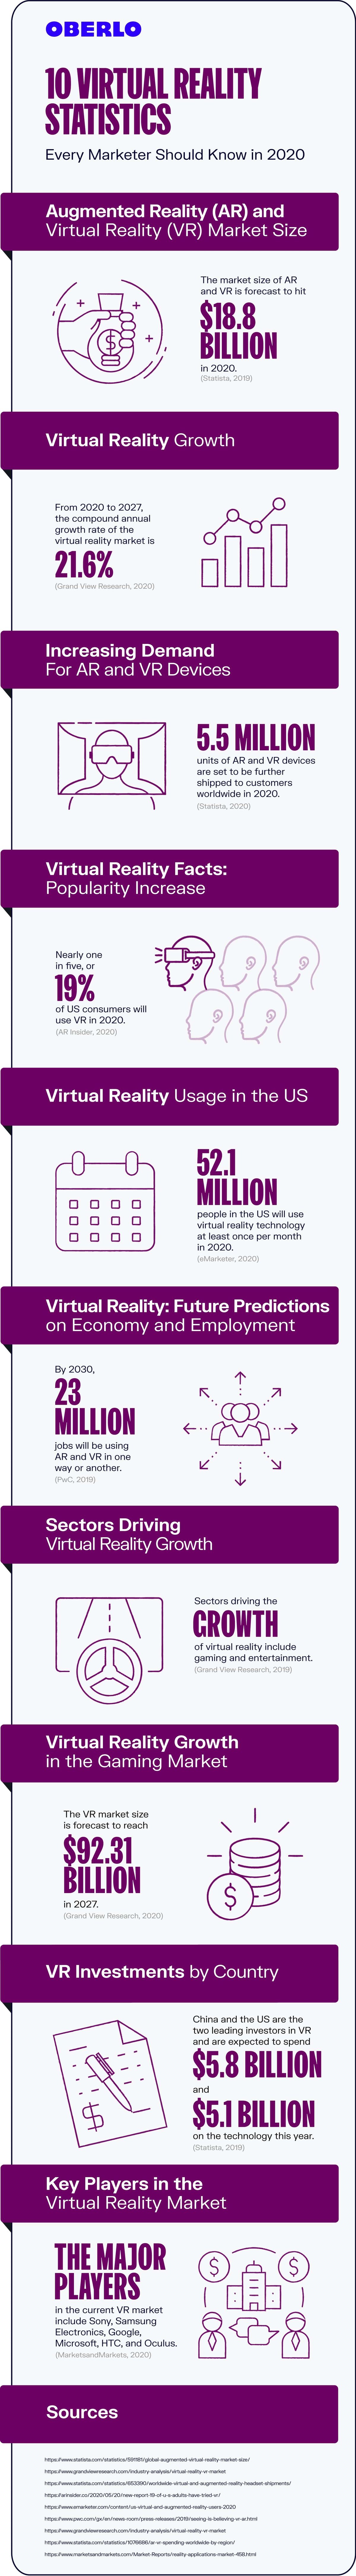 estadístiques de realitat virtual 2020